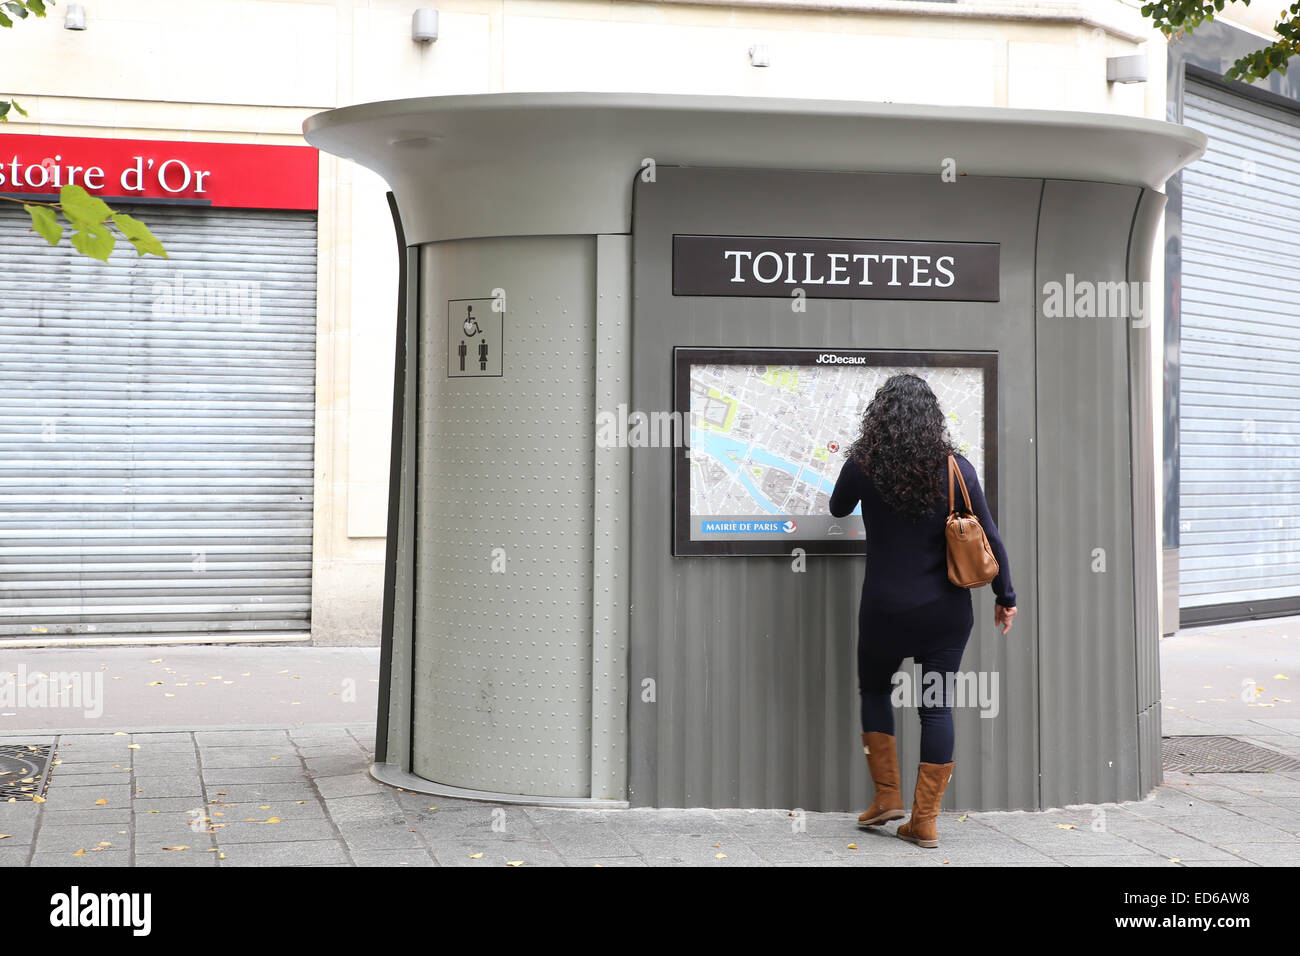 La donna in attesa toilette pubblica wc Paris street Foto Stock